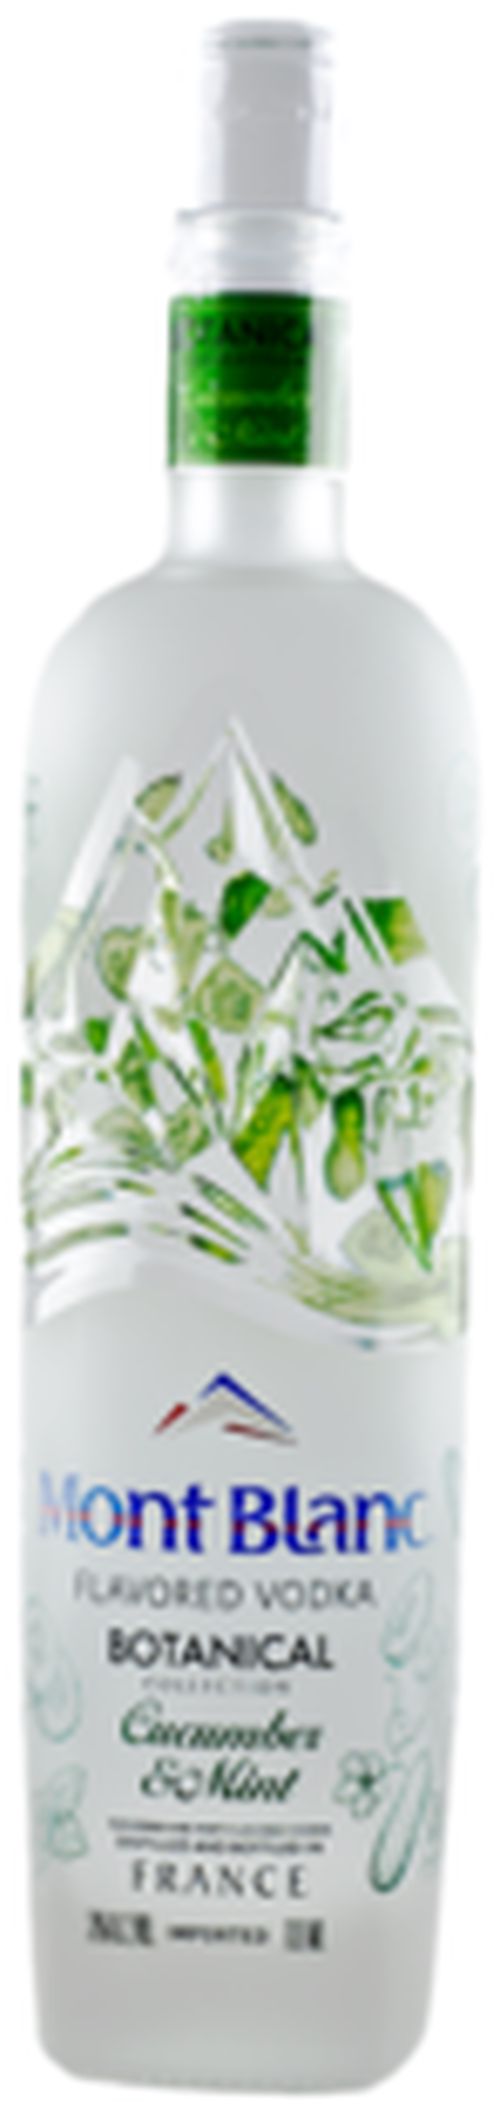 Mont Blanc Botanical Collection Cucumber & Mint 38% 0,7L